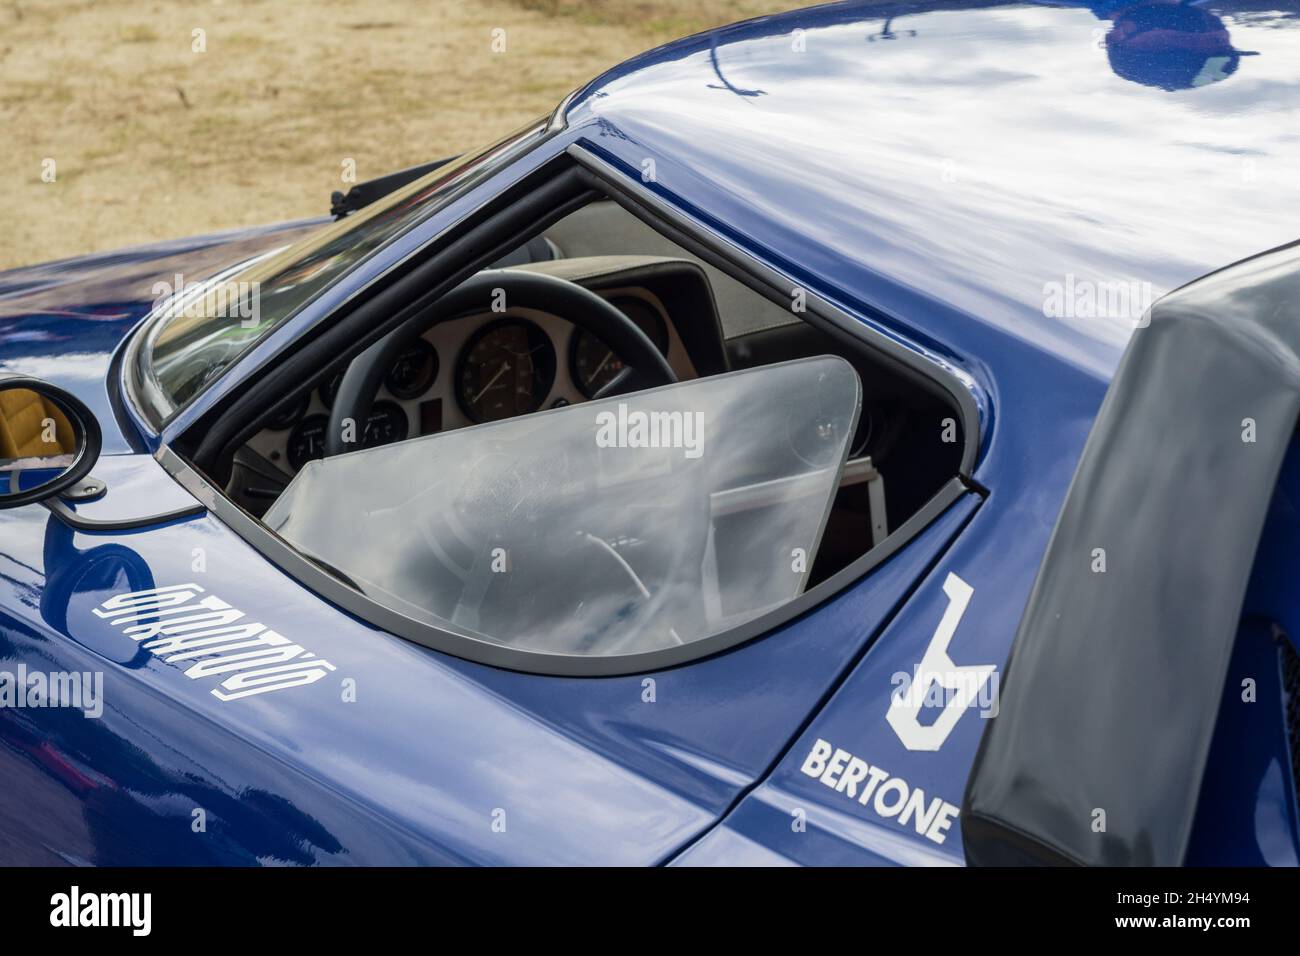 Gros plan de la porte et de la vitre latérale sur une voiture de rallye sportive classique italienne bleue Lancia Stratos HF Stradale. Banque D'Images